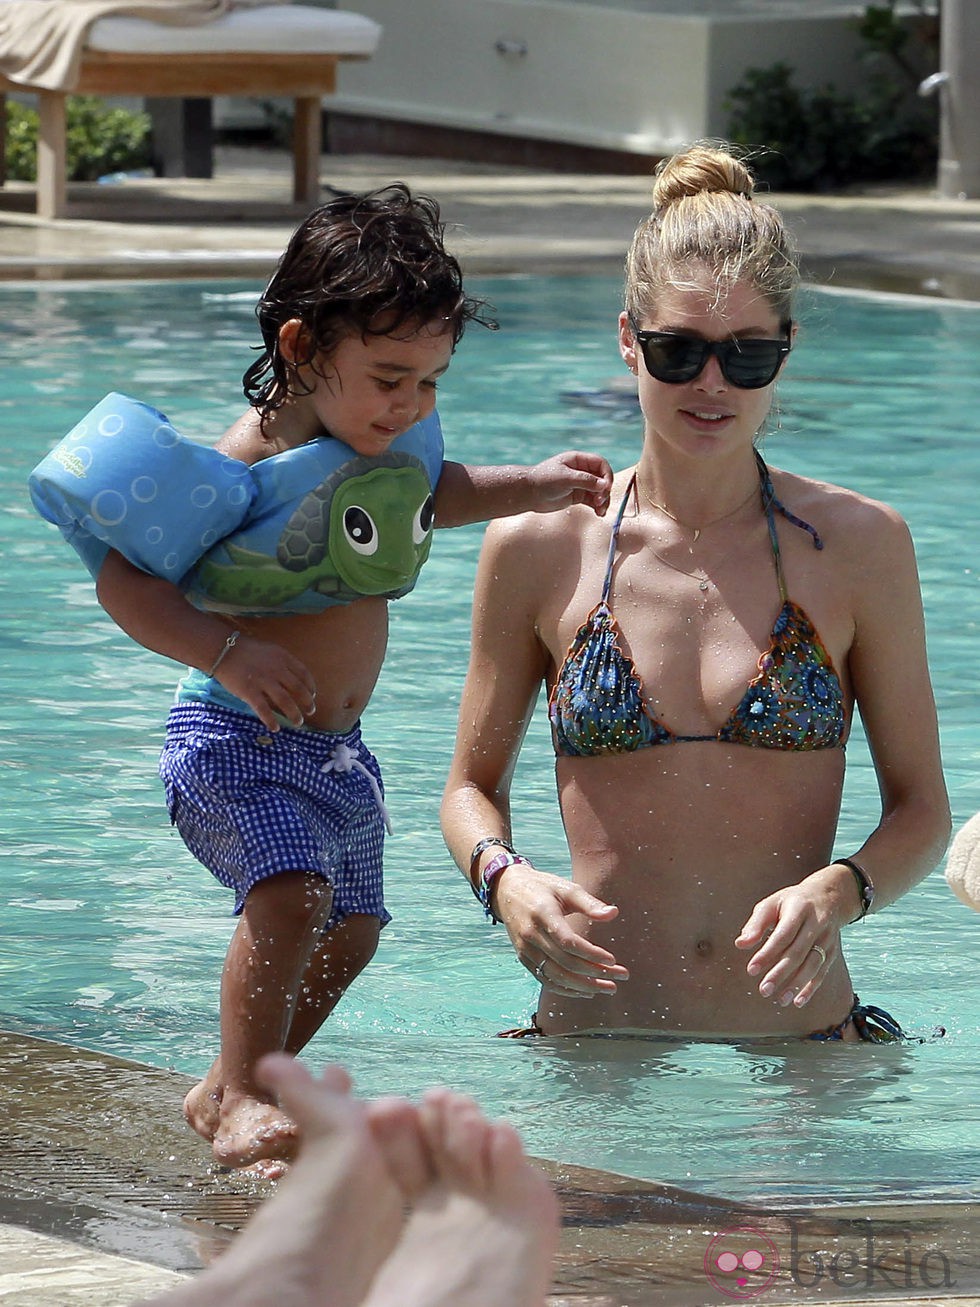 Doutzen Kroes con su hijo Phyllon James jugando en una piscina de Miami